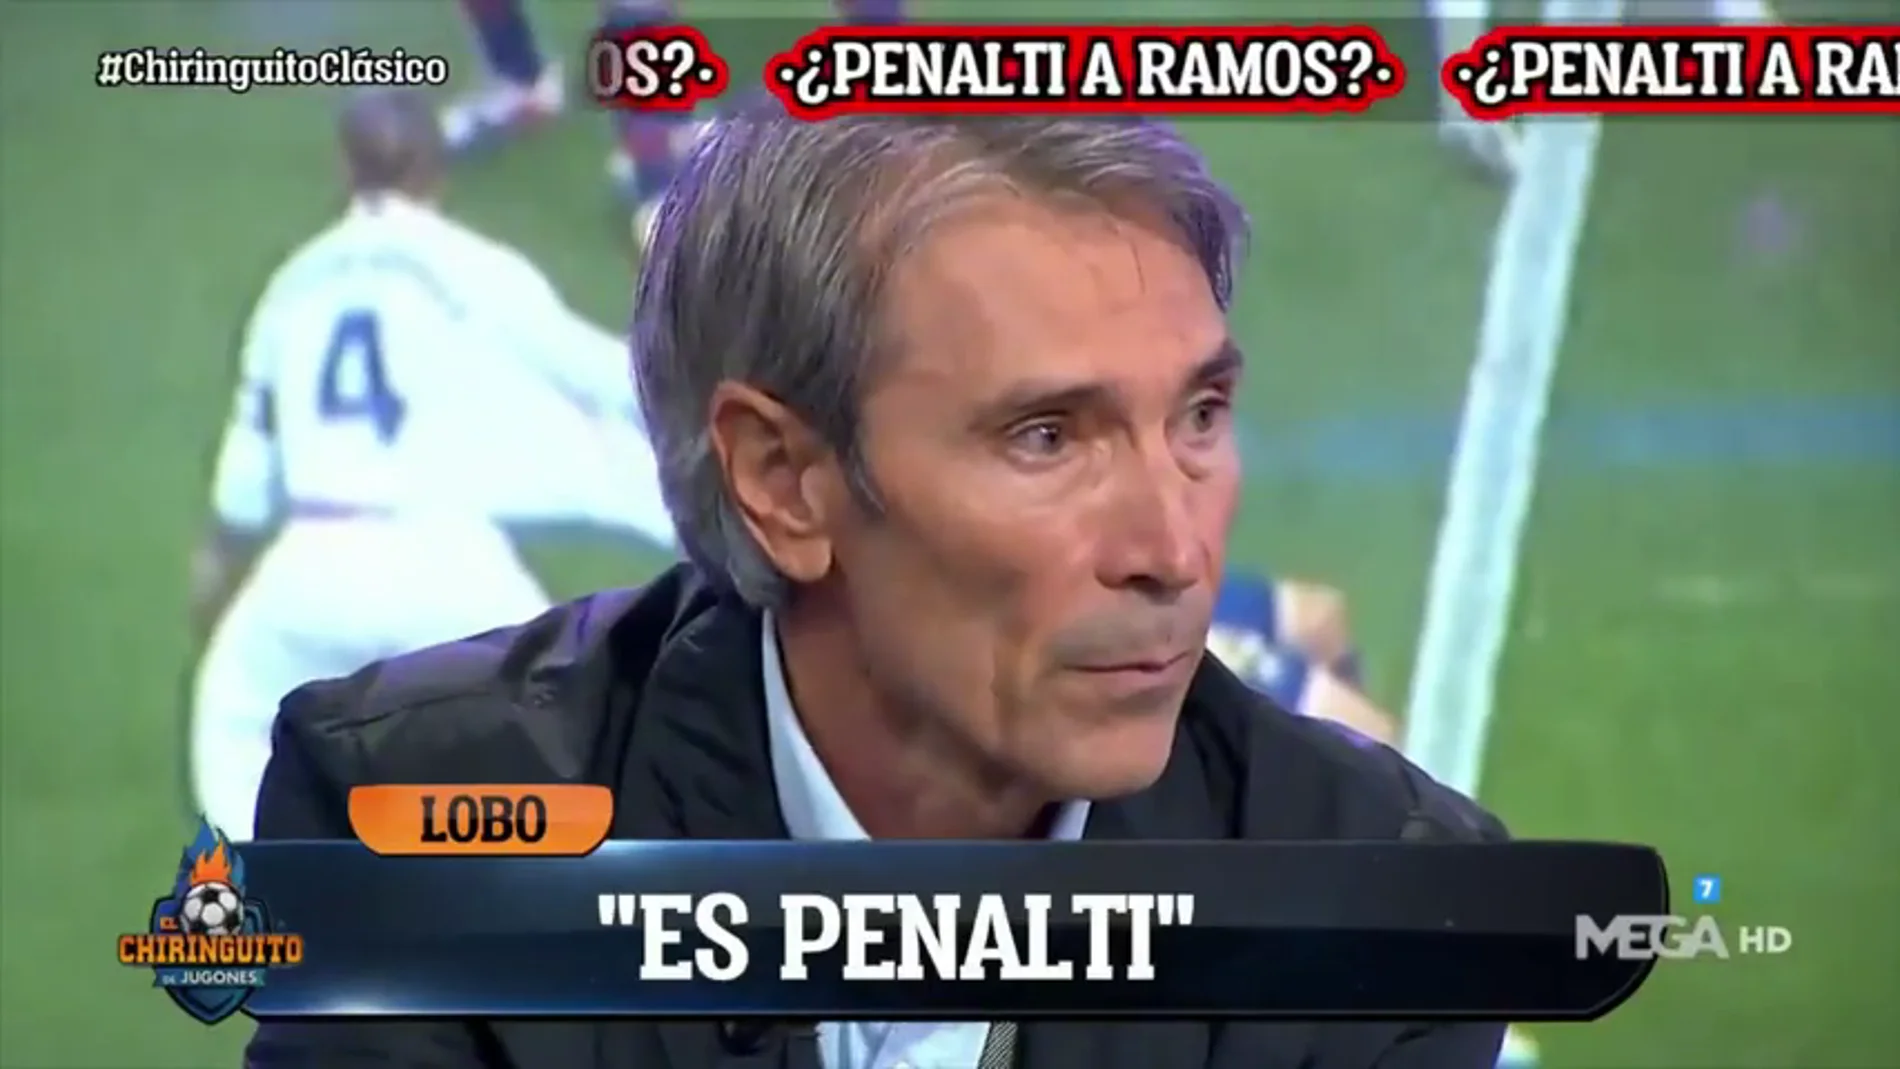 Lobo Carrasco y el histórico momento en 'El Chiringuito' que puso a Josep Pedrerol en pie: "Es penalti a Ramos"